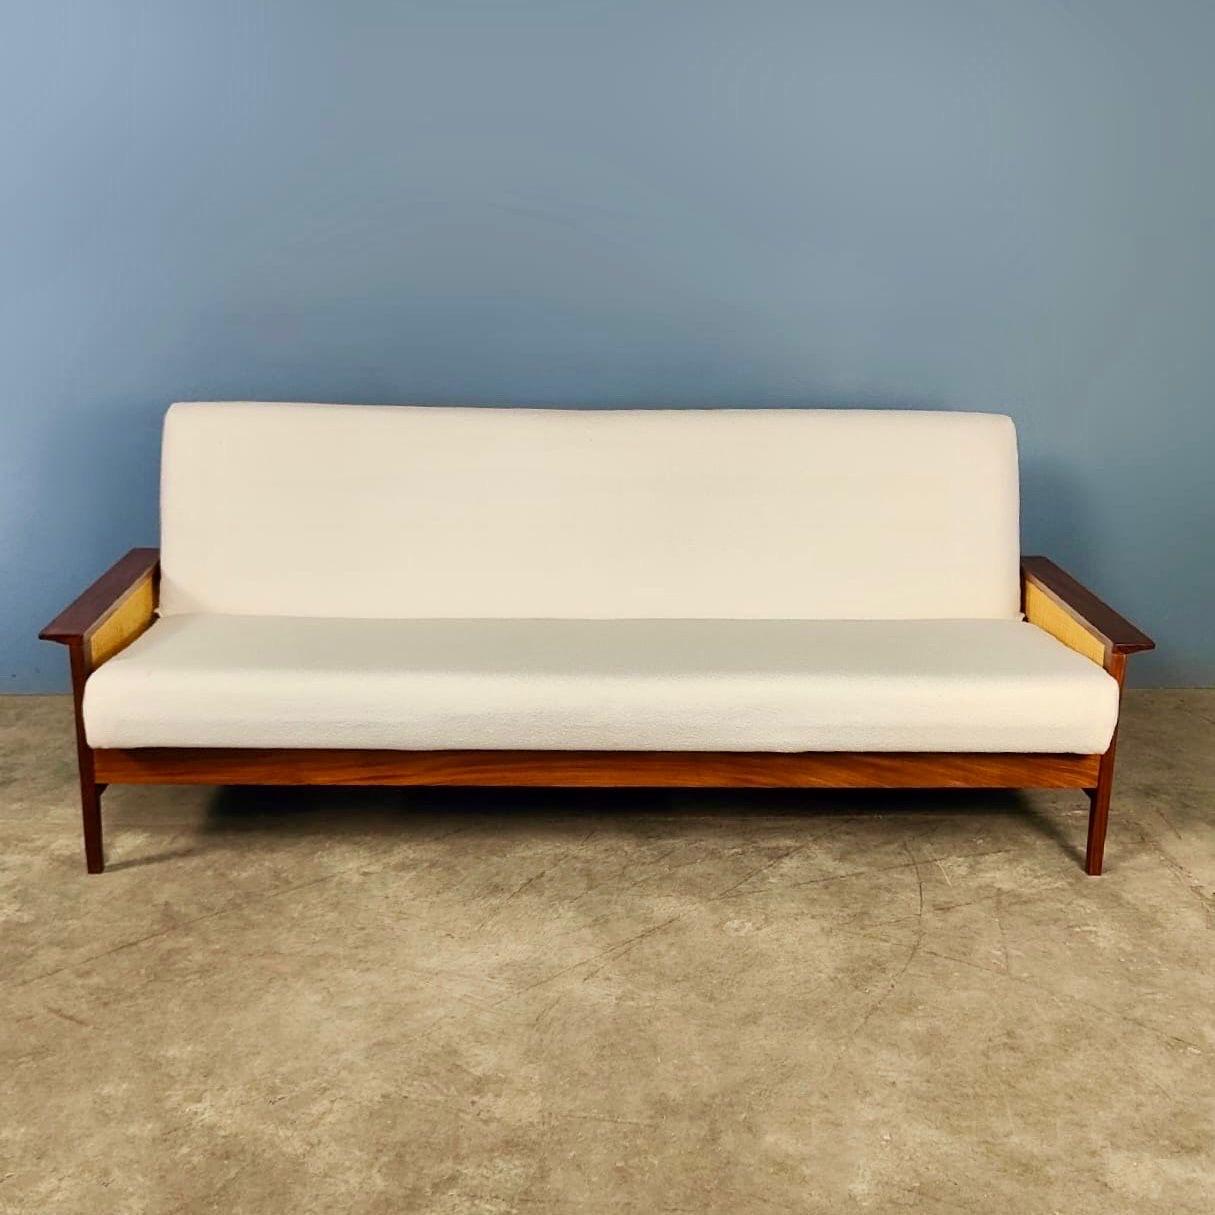 Neuer Bestand ✅

1960er Jahre G-Plan Gruppe 3 Dreisitzer-Sofa, entworfen von Richard Young von Merrow Associates

Das von G-Plan produzierte und von Richard Young in den frühen 1960er Jahren entworfene Sofa ist ein schöner und äußerst praktischer